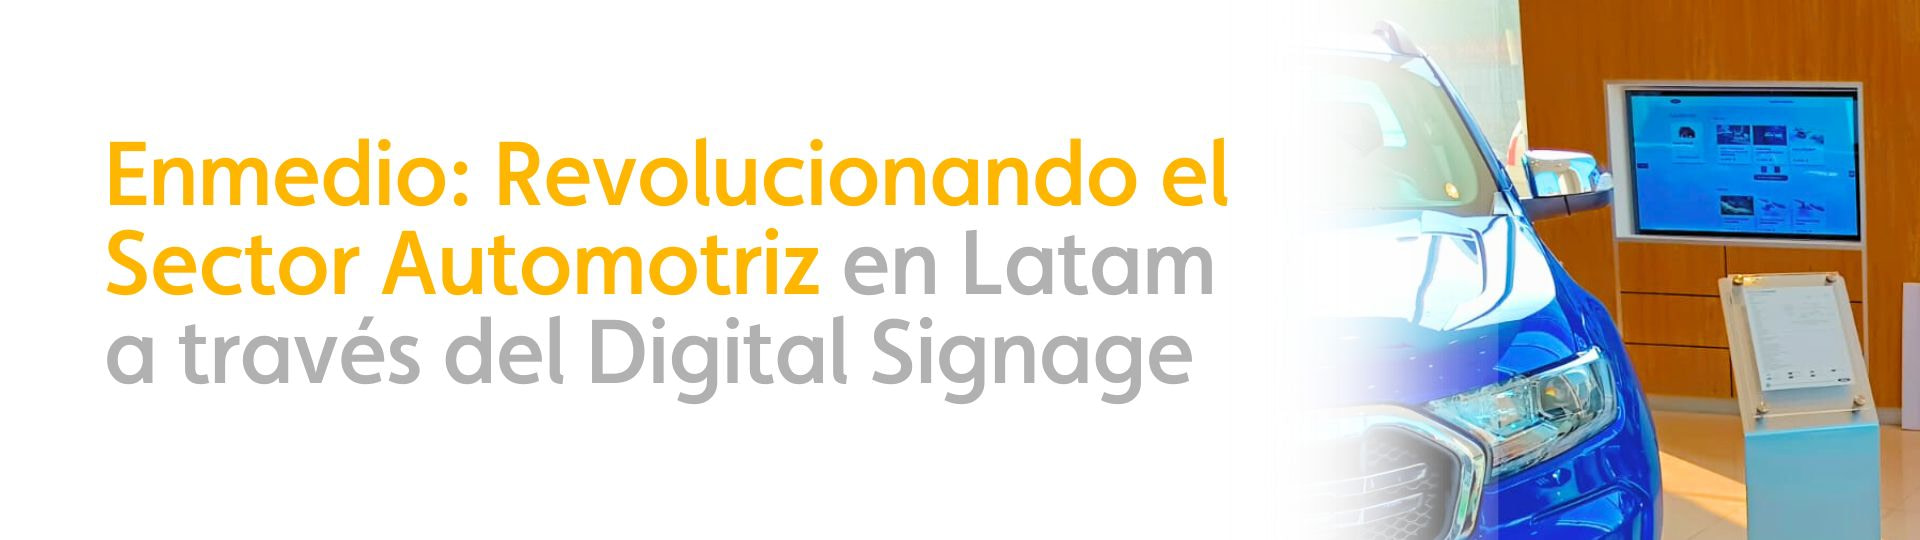 Enmedio: Revolucionando el Sector Automotriz en Latam a través del Digital Signage 1